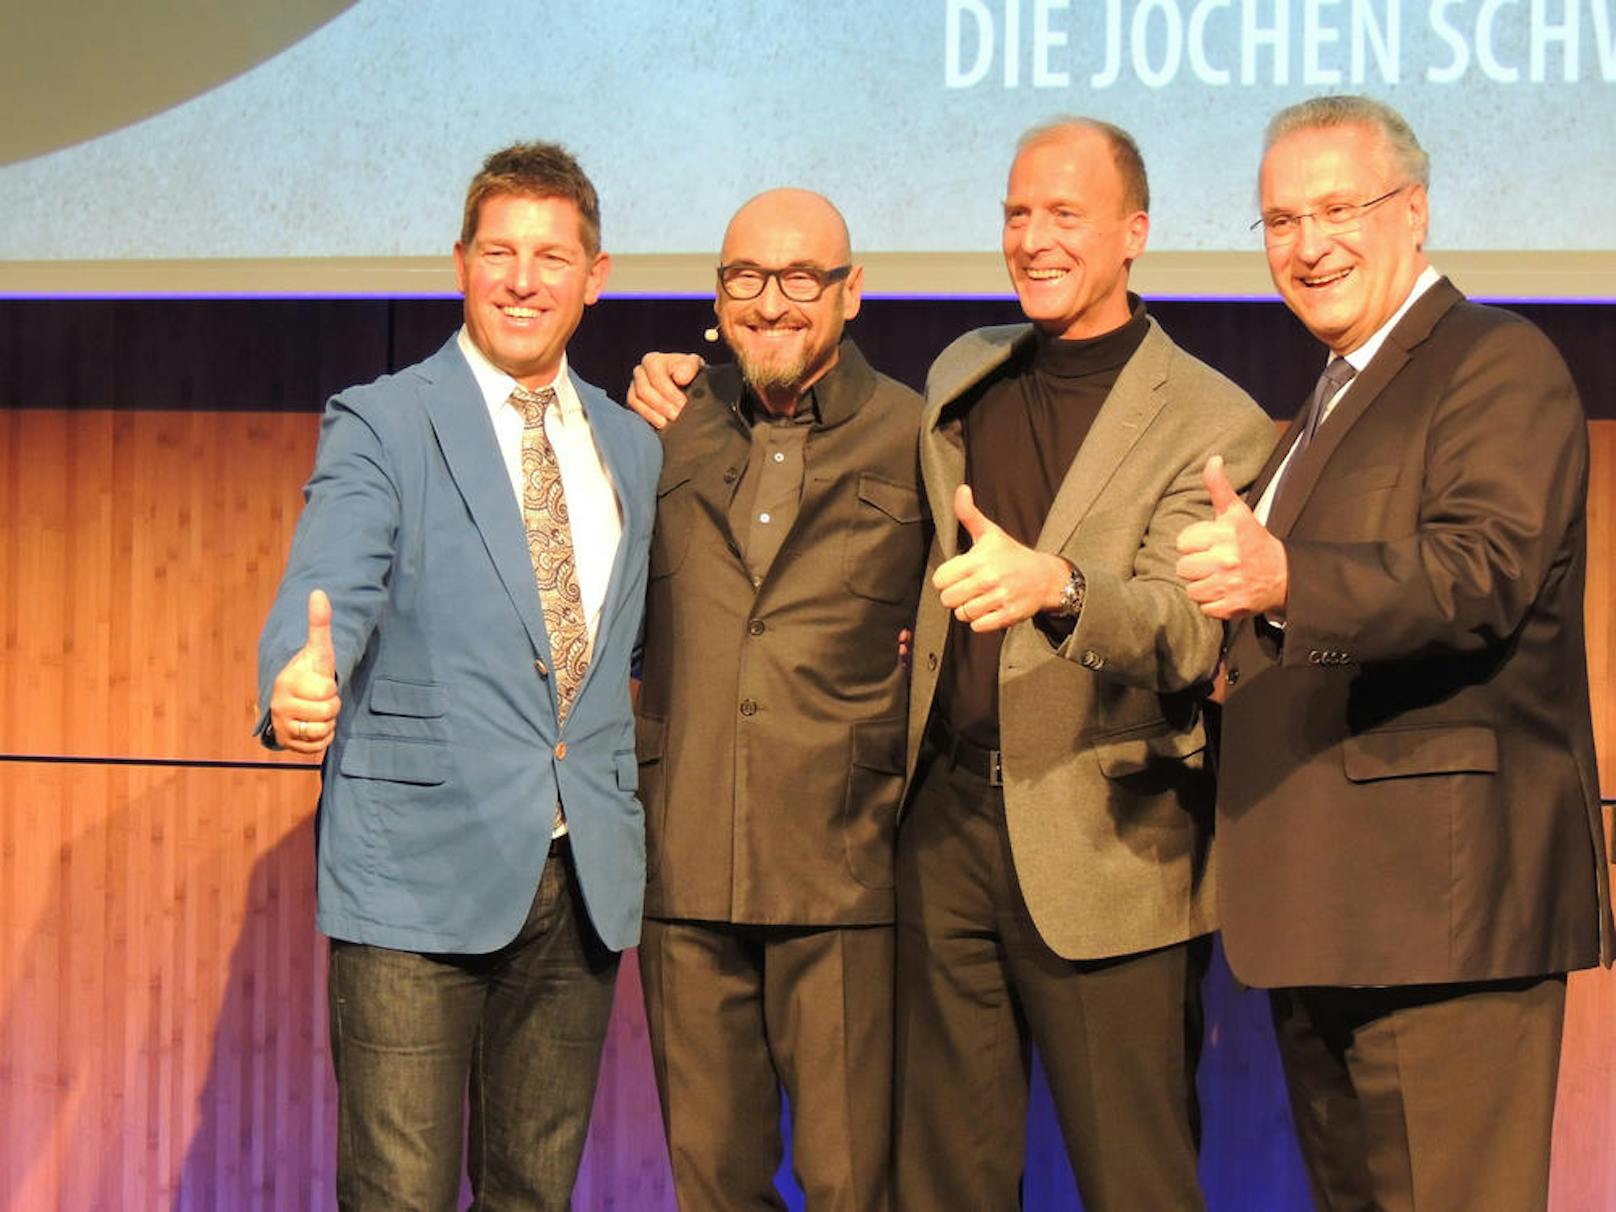 Jochen Schweizer (2. von links) mit dem Taufkirchner Bürgermeister Ullrich Sander, Airbus-Chef Tom Enders und Staatsminister Joachim Herrmann (von links nach rechts)